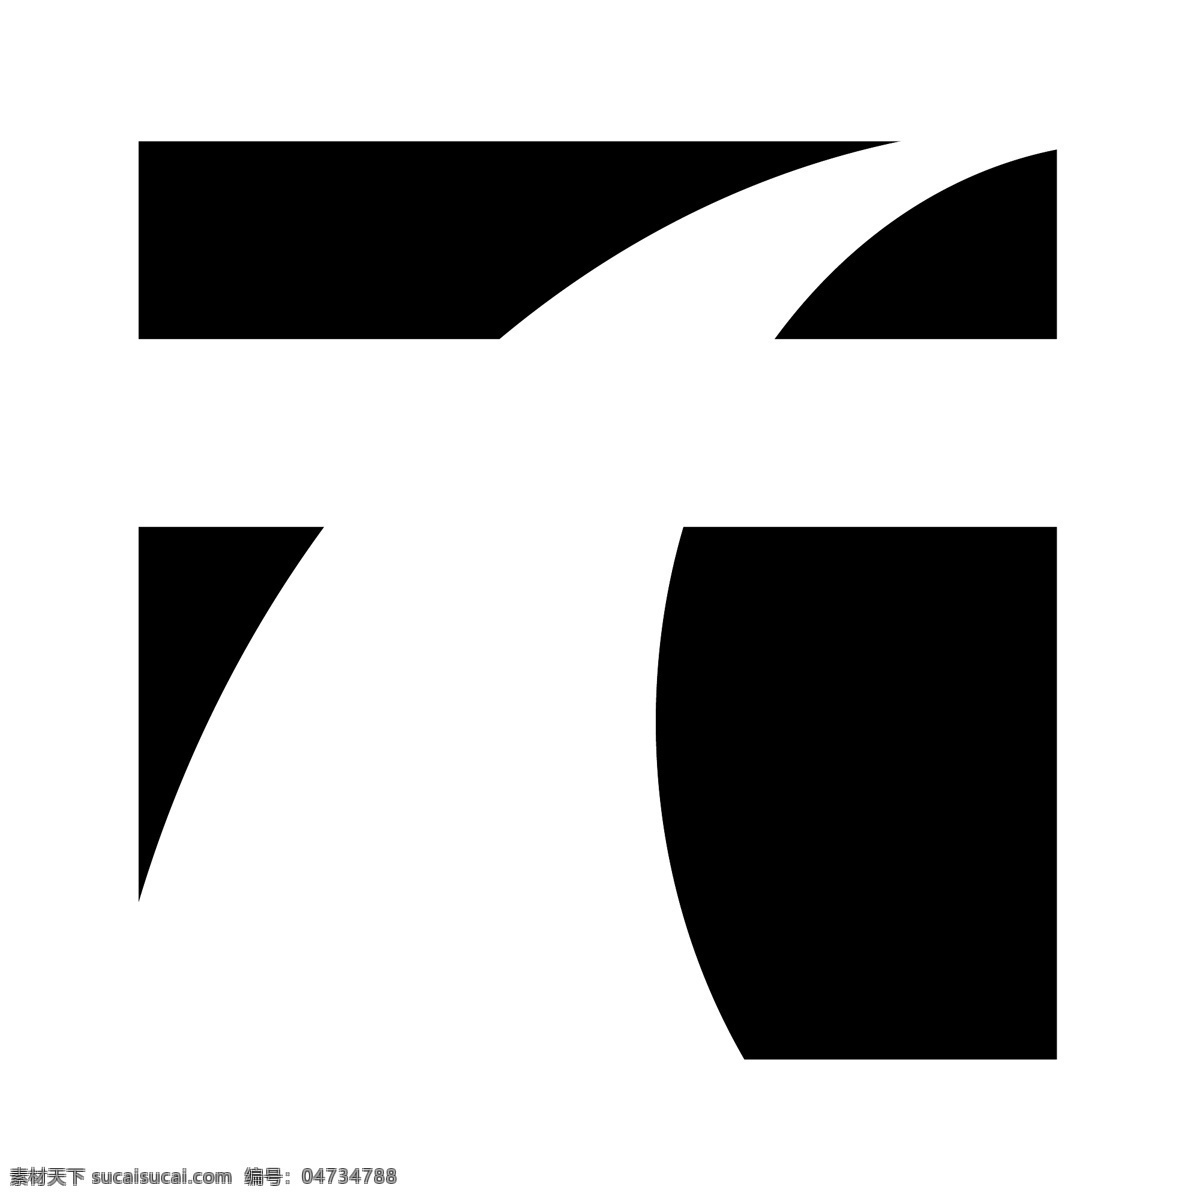 十字路口 电影节 标志 免费 psd源文件 logo设计